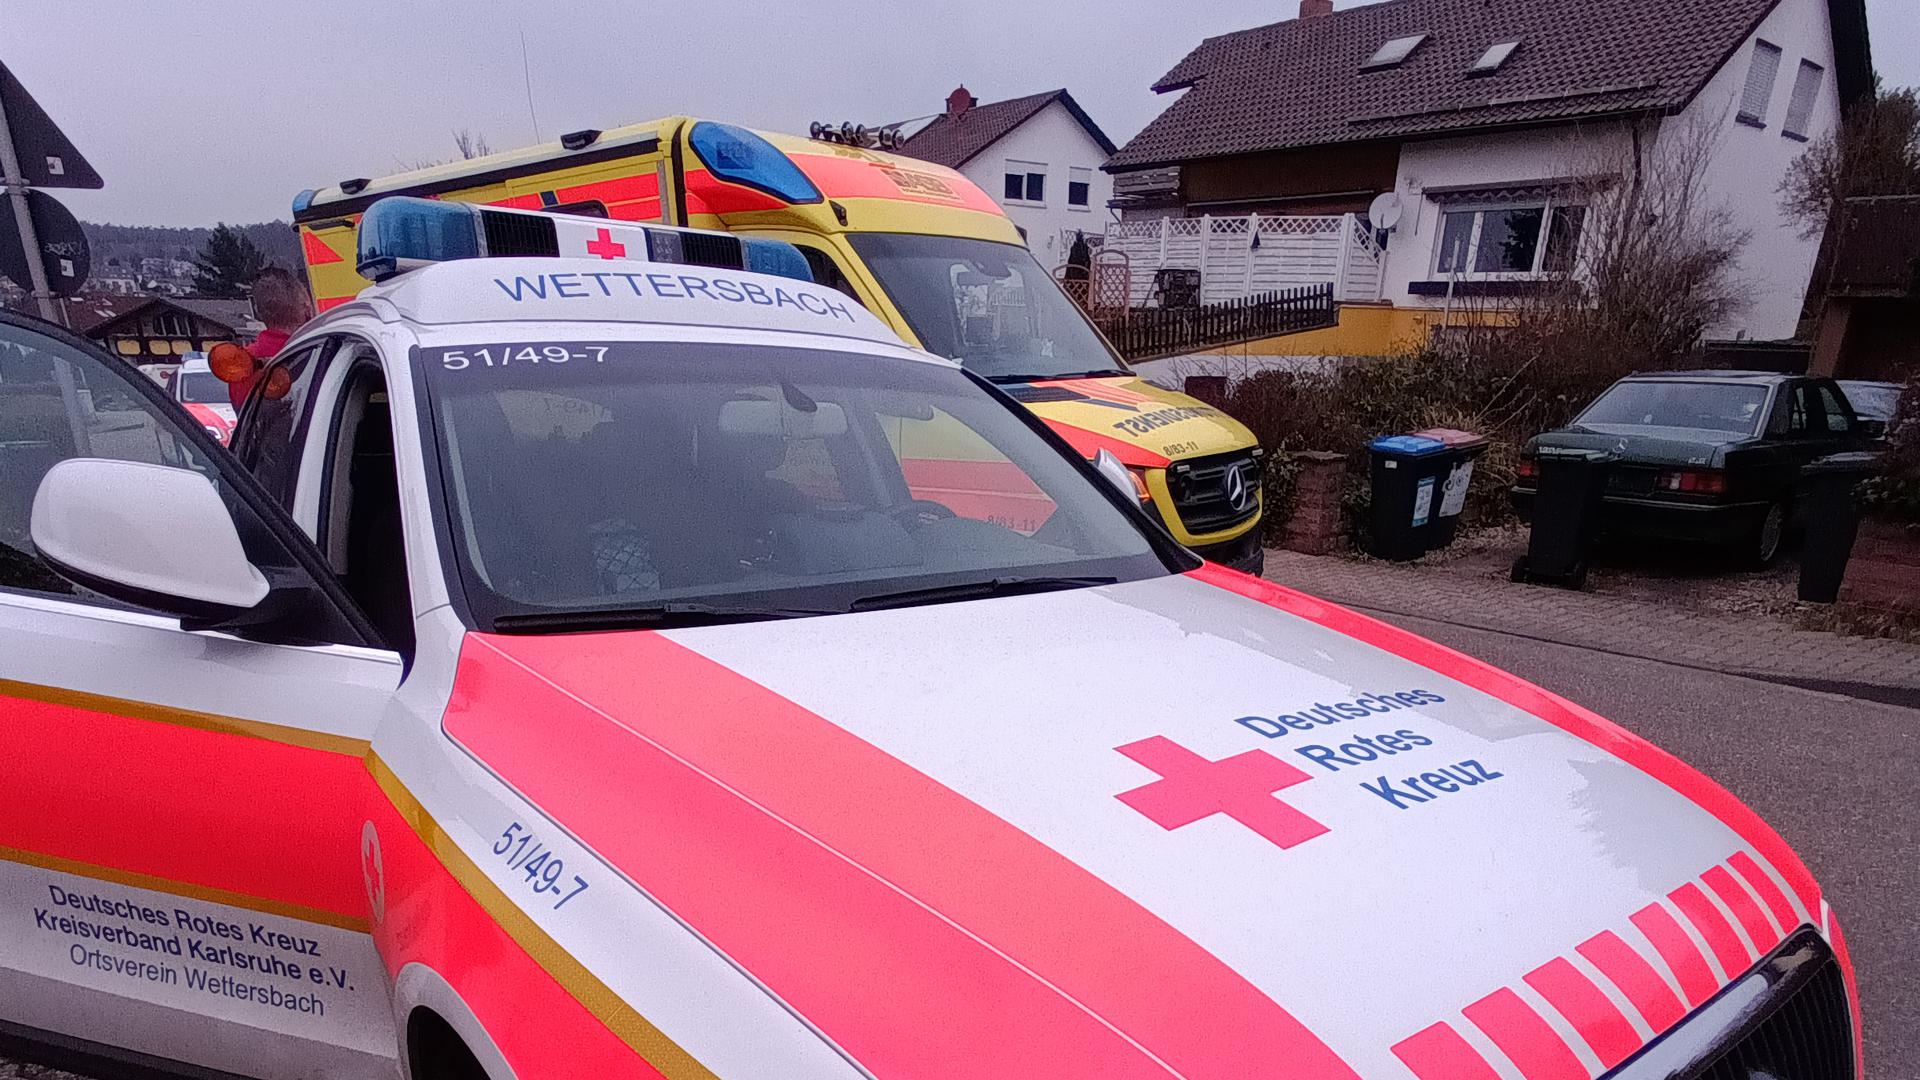 Einsatzfahrzeug der Notfallhilfe Wettersbach